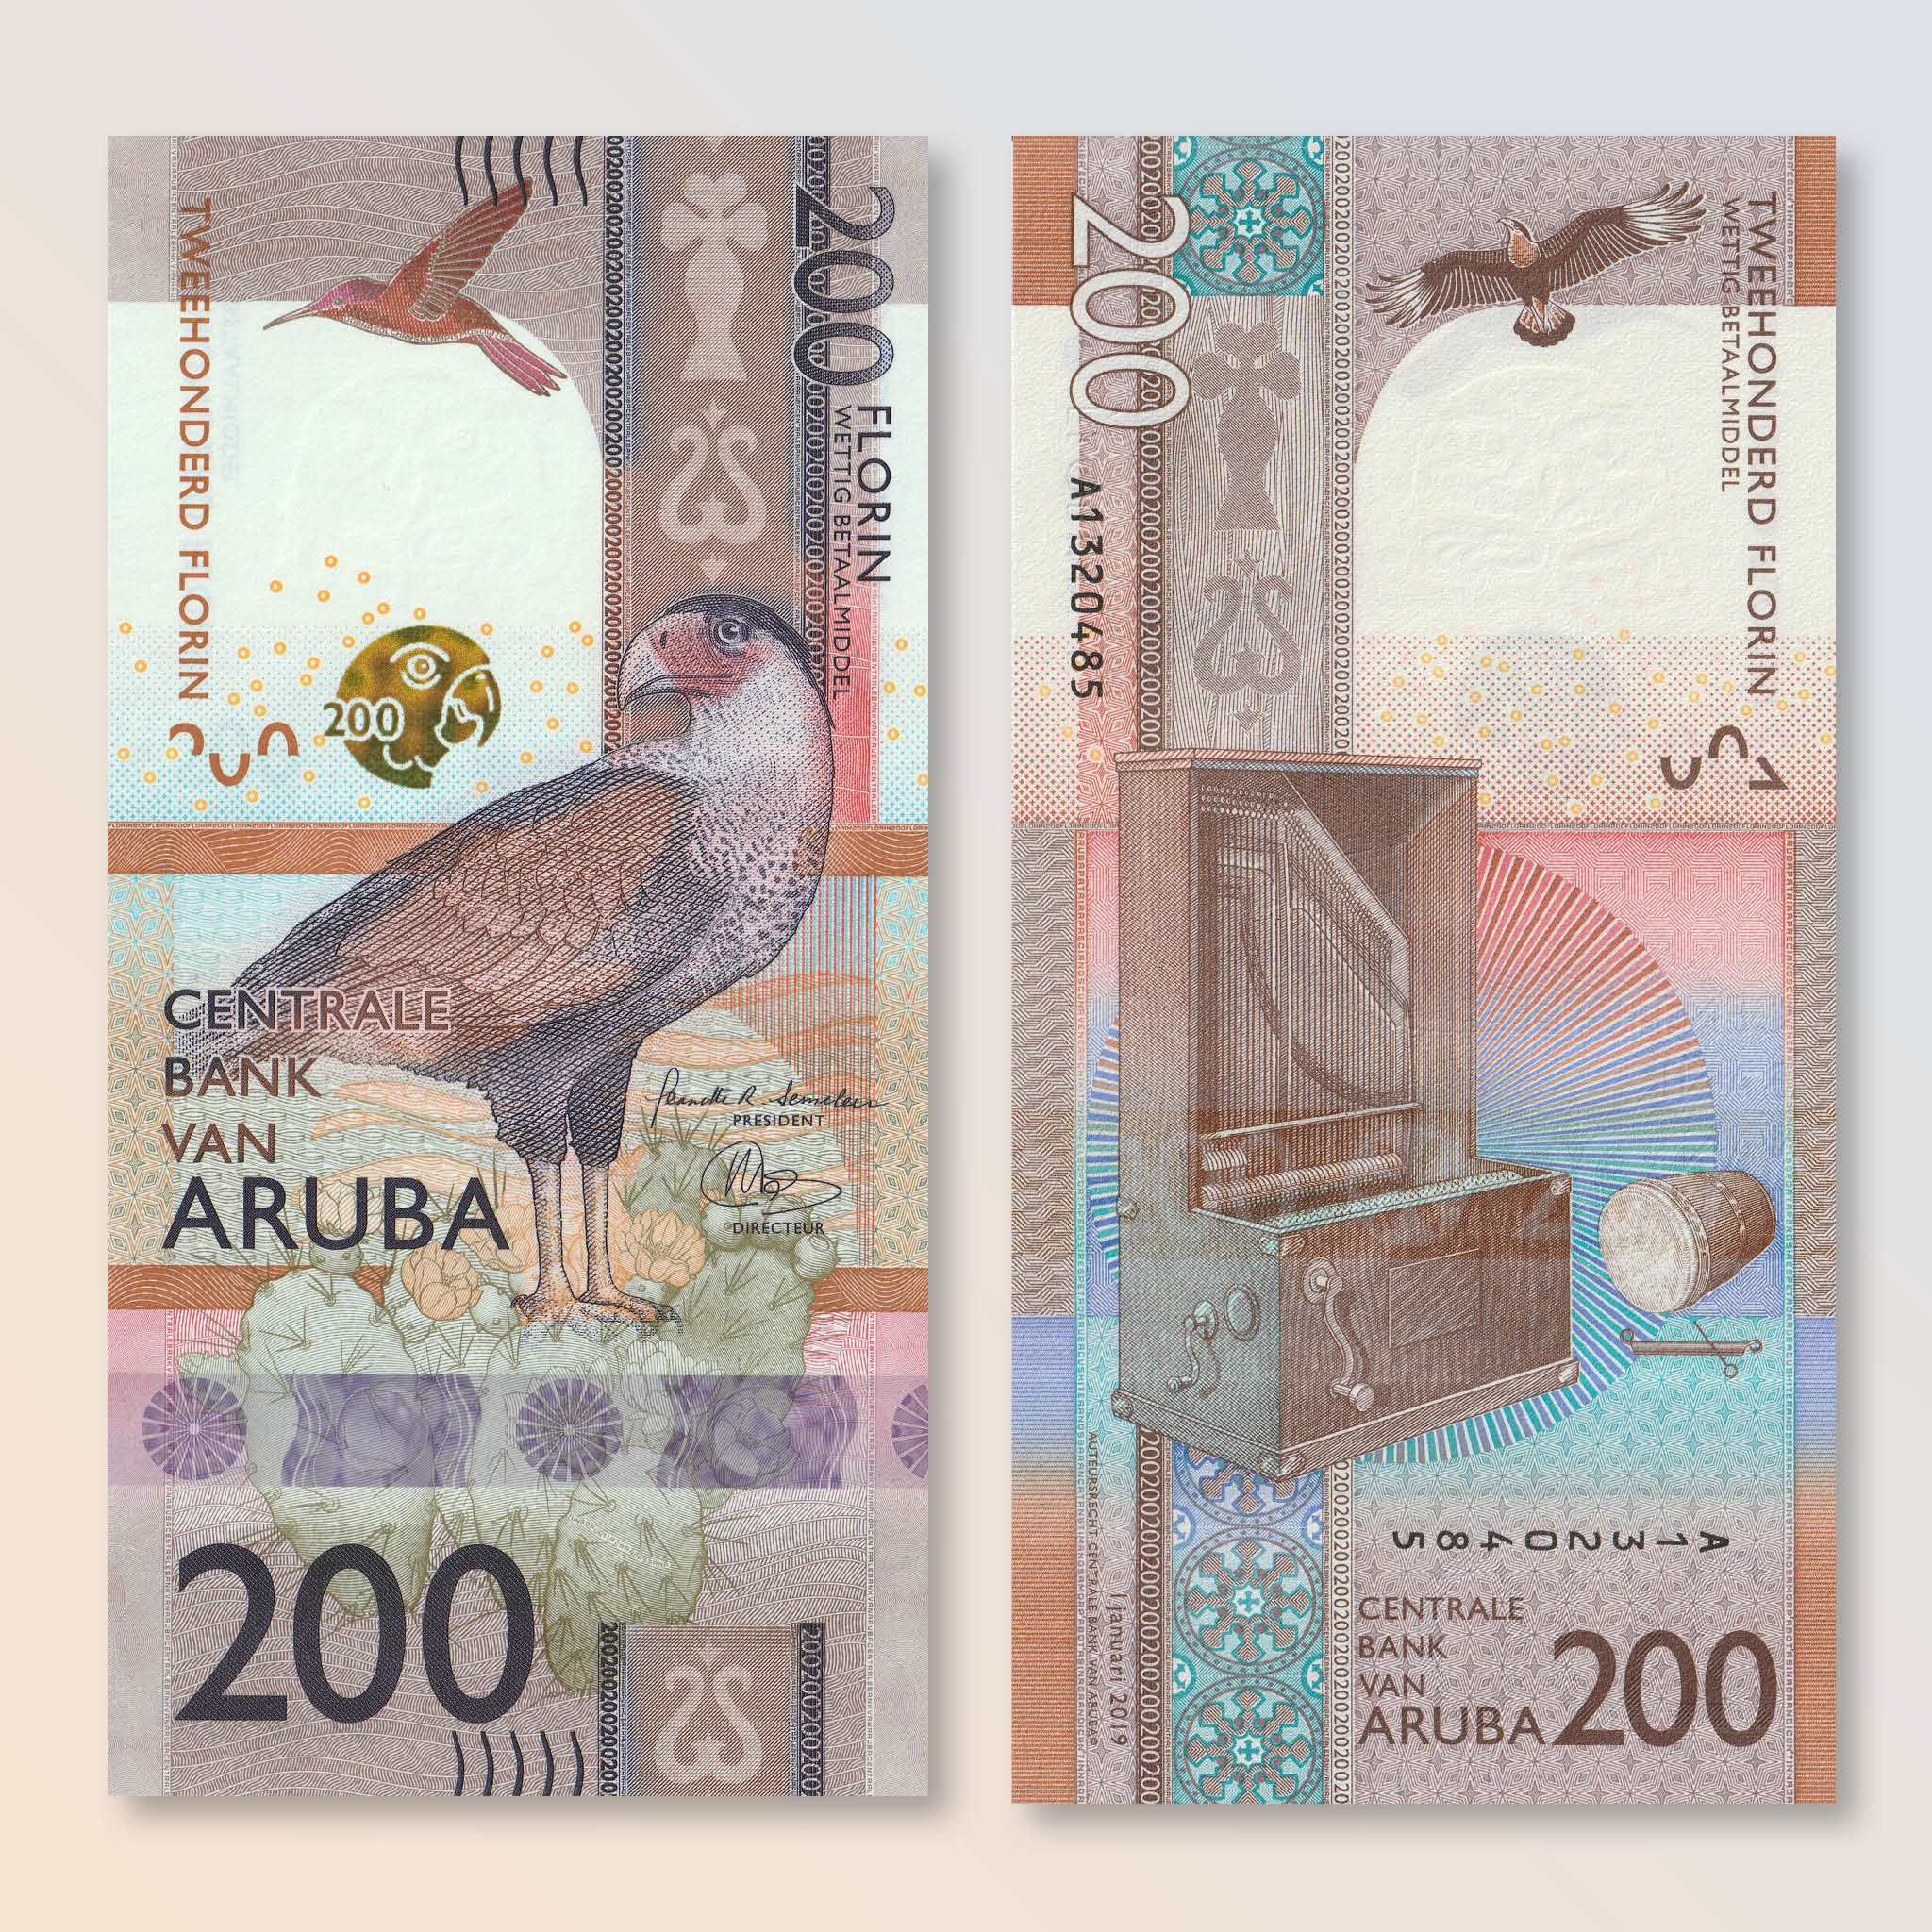 Aruba 200 Florin, 2019, B125a, UNC - Robert's World Money - World Banknotes